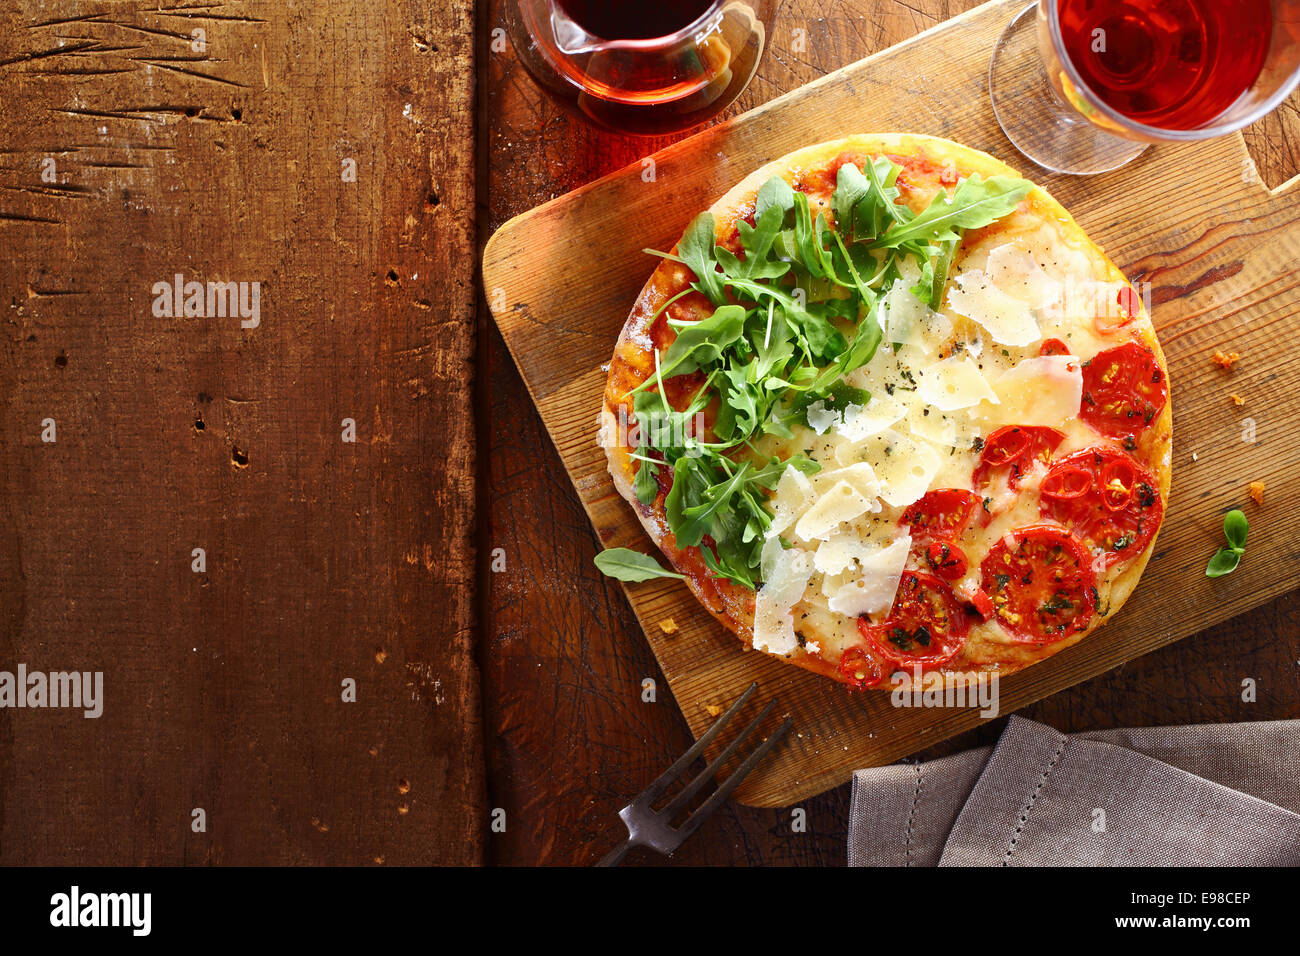 Italiano patriottica pizza tricolore con strisce di colore rosso, bianco e verde con i colori della bandiera nazionale formato da pomodoro, formaggio fresco e rucola utilizzato per il topping su un tavolo di legno con copyspace Foto Stock